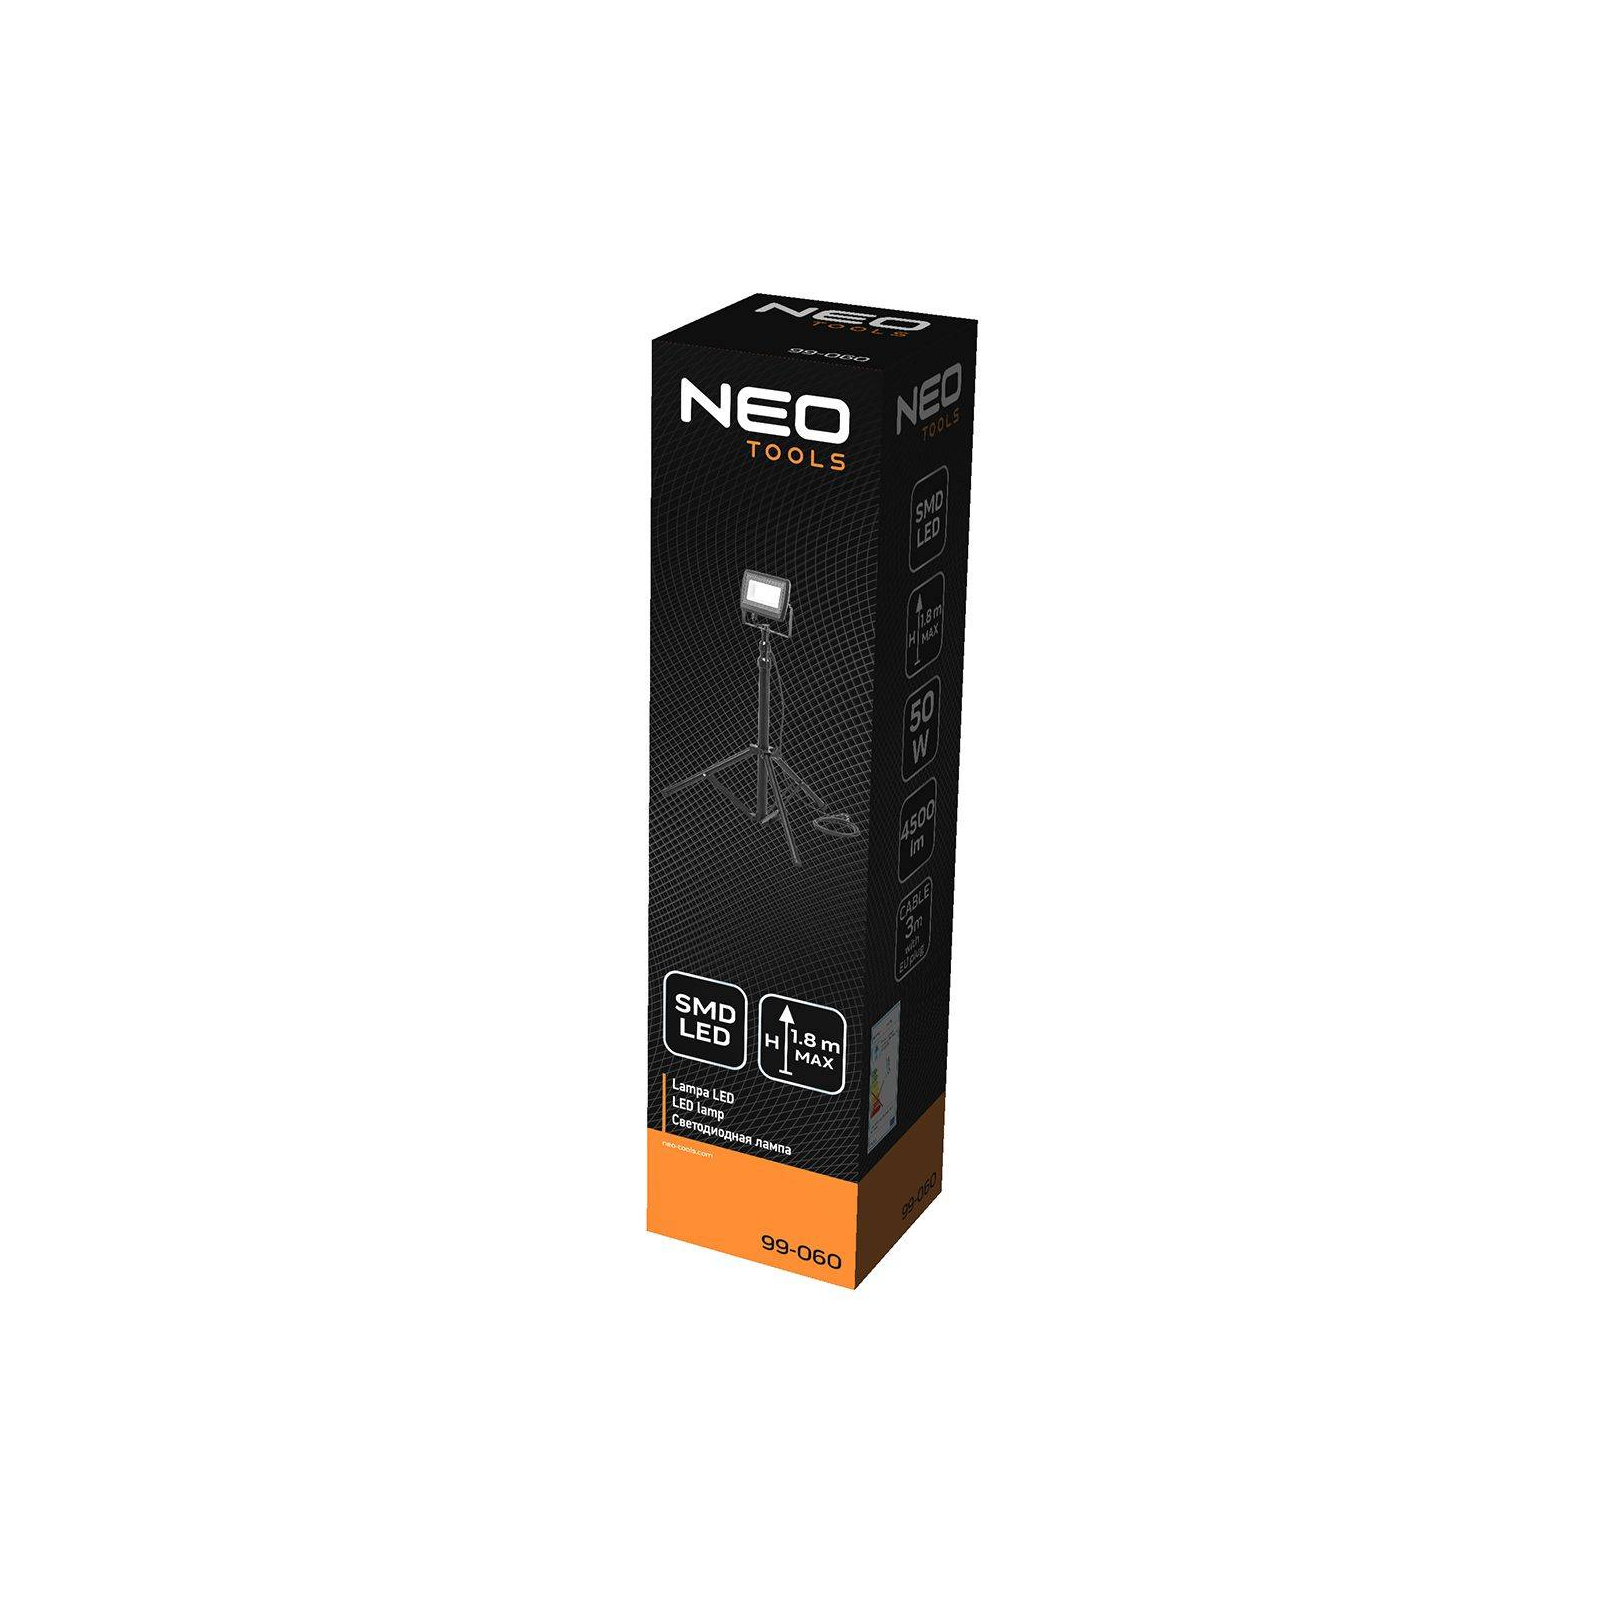 Прожектор Neo Tools алюминий, 220 В, 50Вт, 4500 люмен, SMD LED, кабель 3 м с вил (99-060) изображение 4